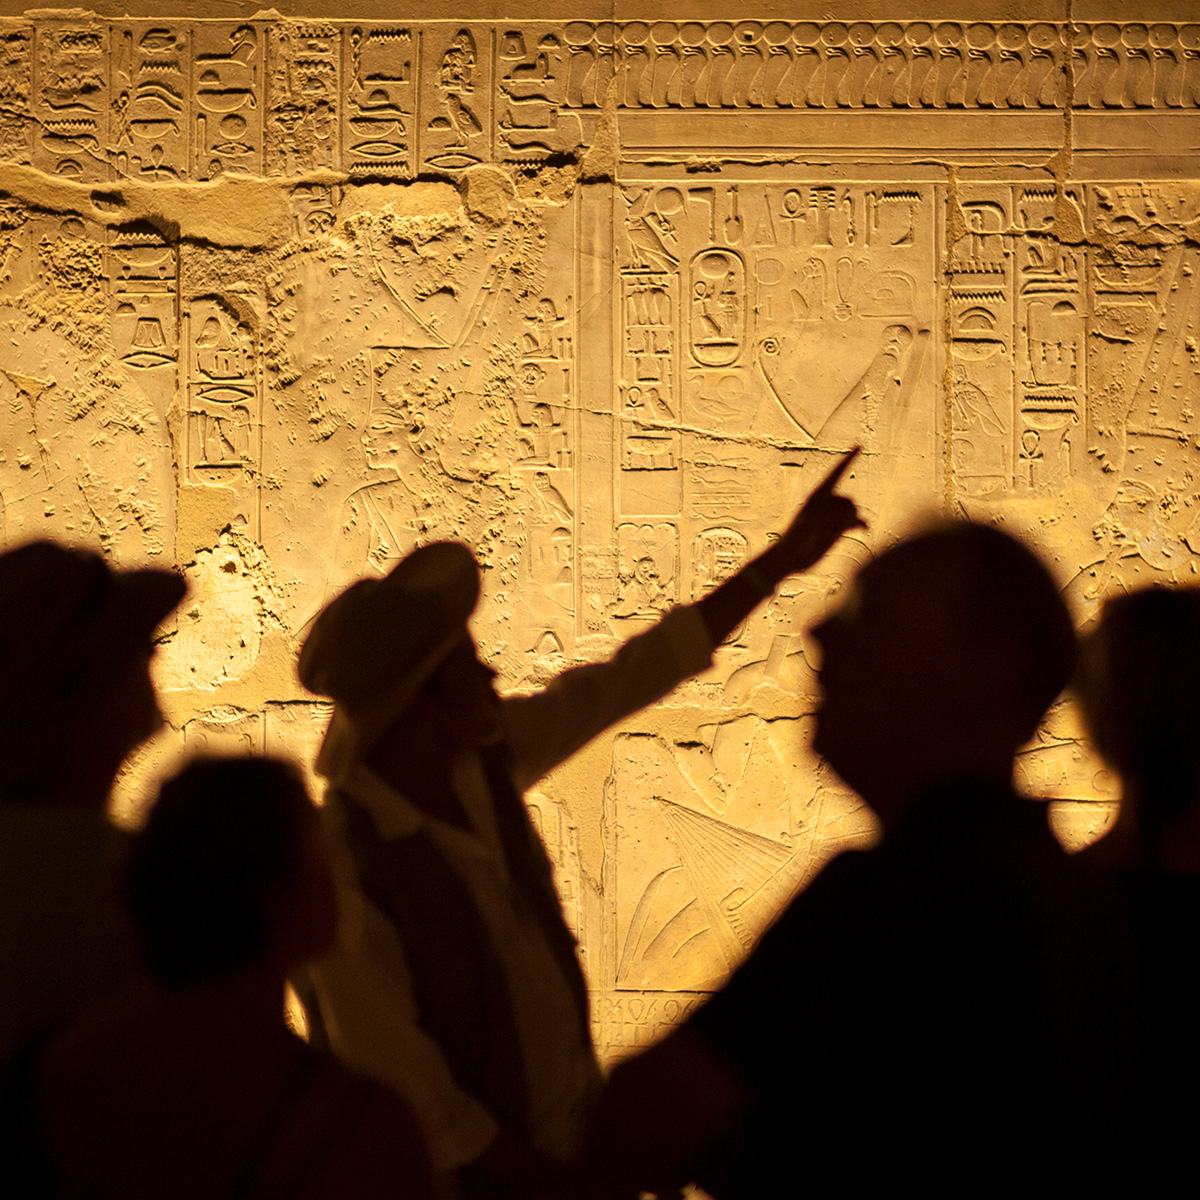 Ein Reiseführer zeigt auf alte Antike Schriftzeichen